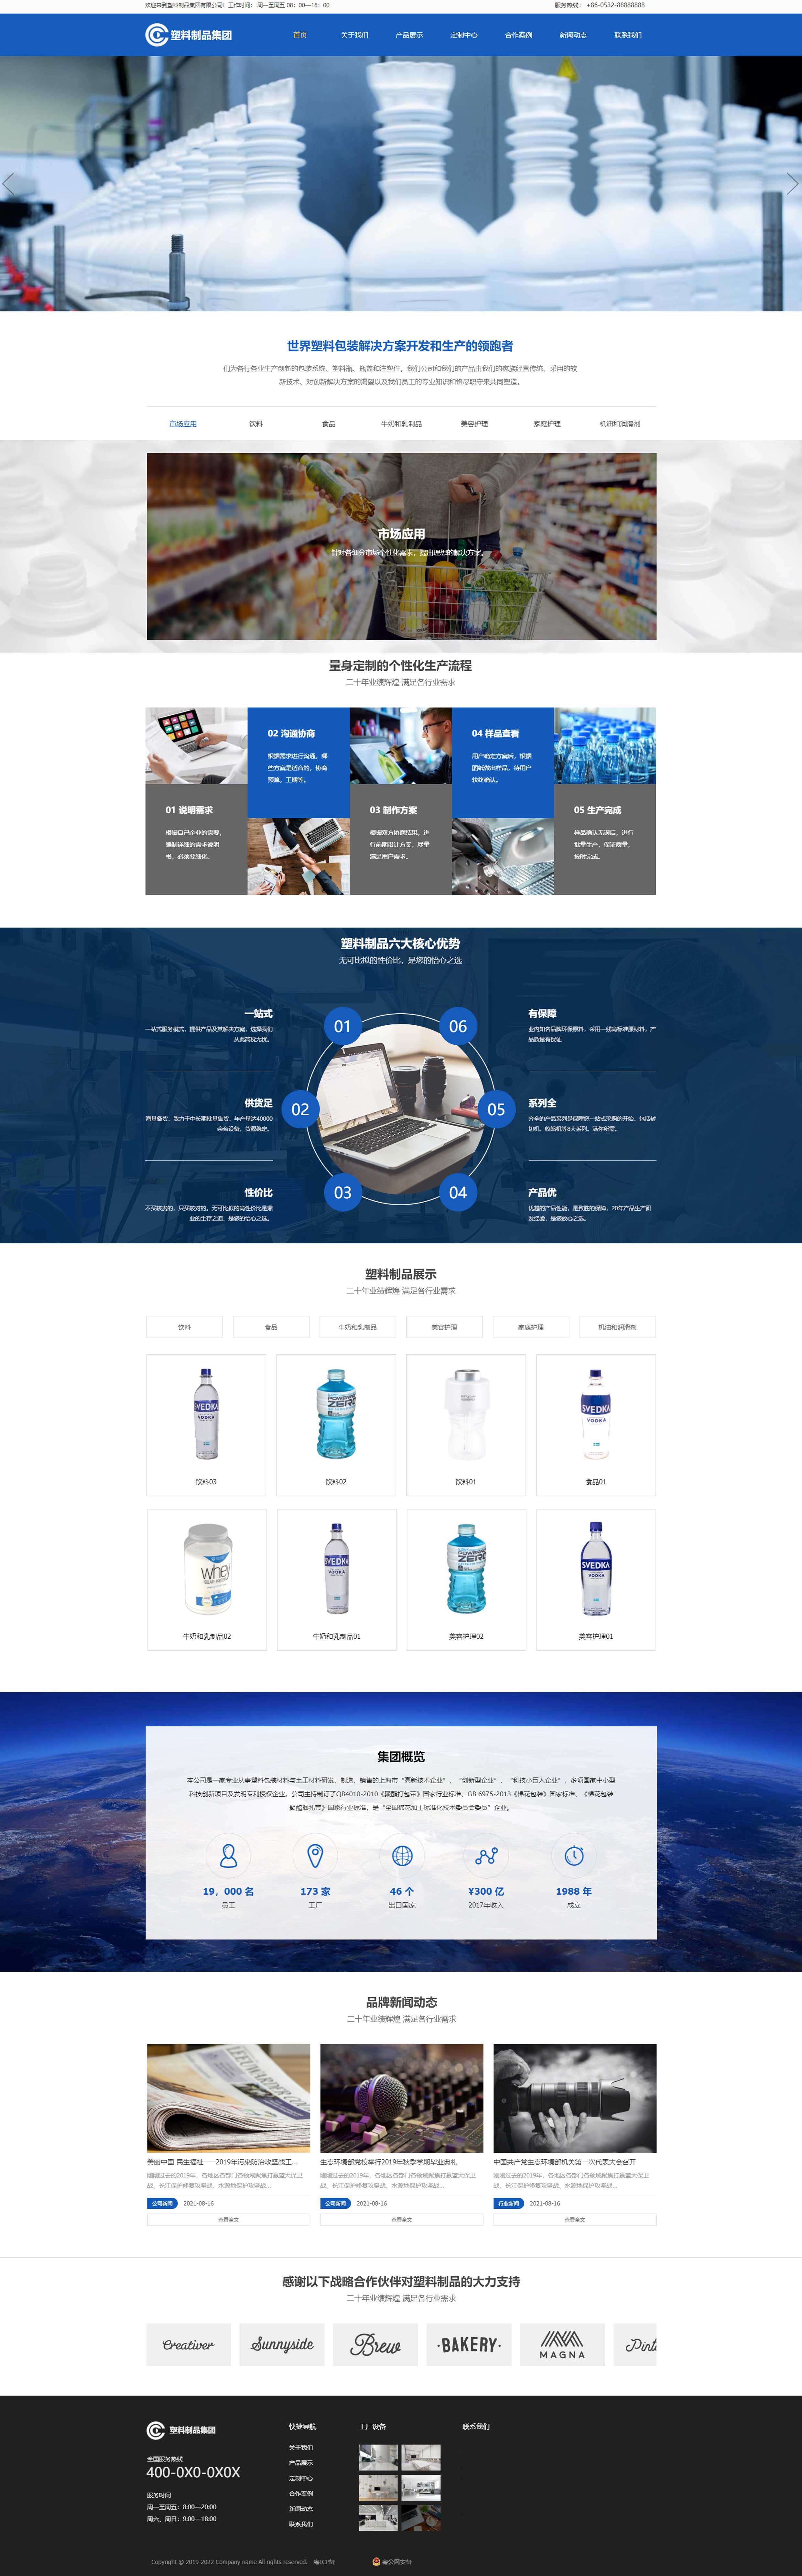 塑料制品公司企业网站制作设计